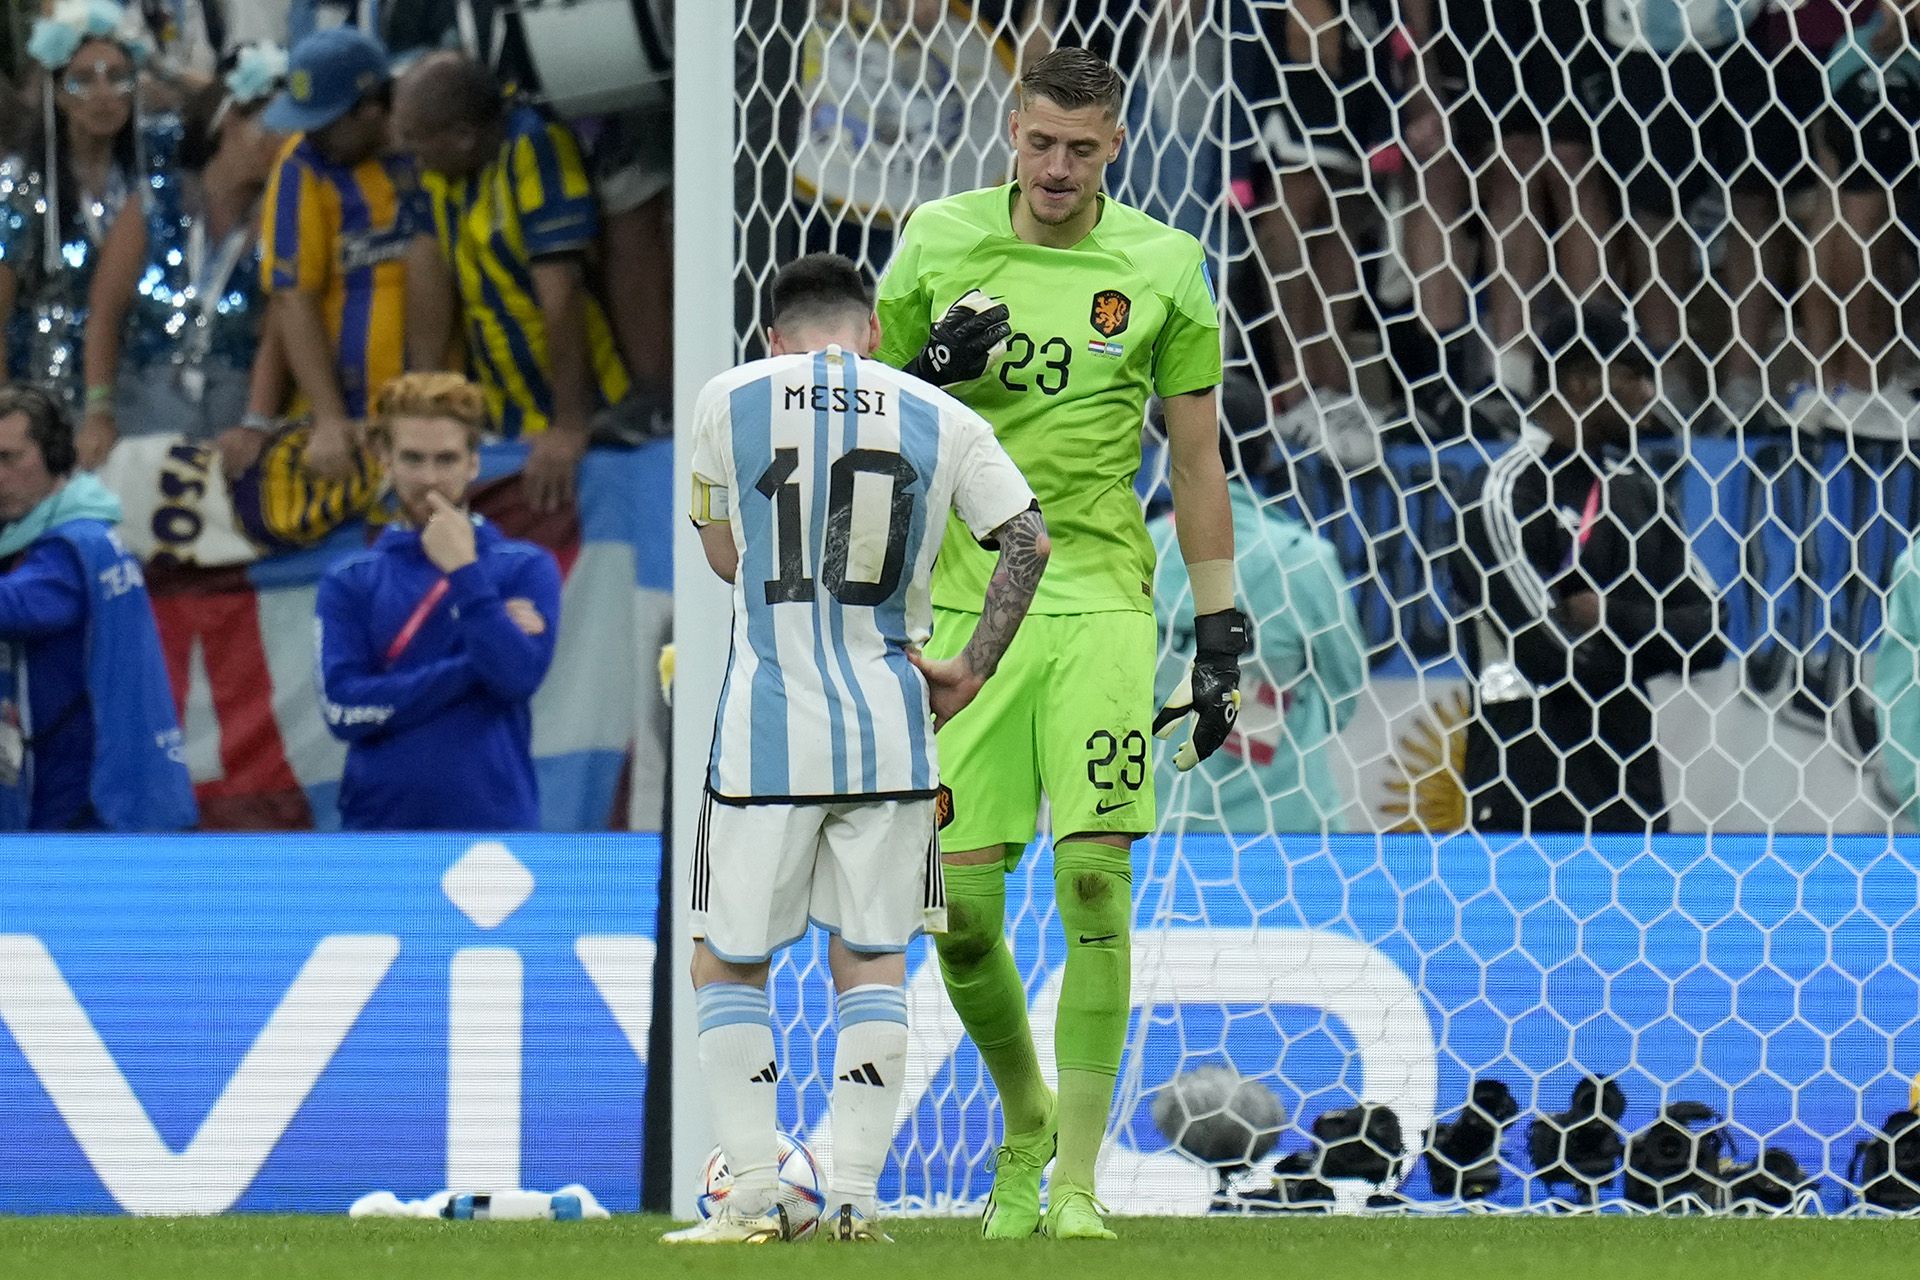 Lionel Messi convirtió los dos penales que ejecutó ante Andries Noppert en los cuartos de final del Mundial de Qatar 2022 (AP Photo/Ricardo Mazalan)